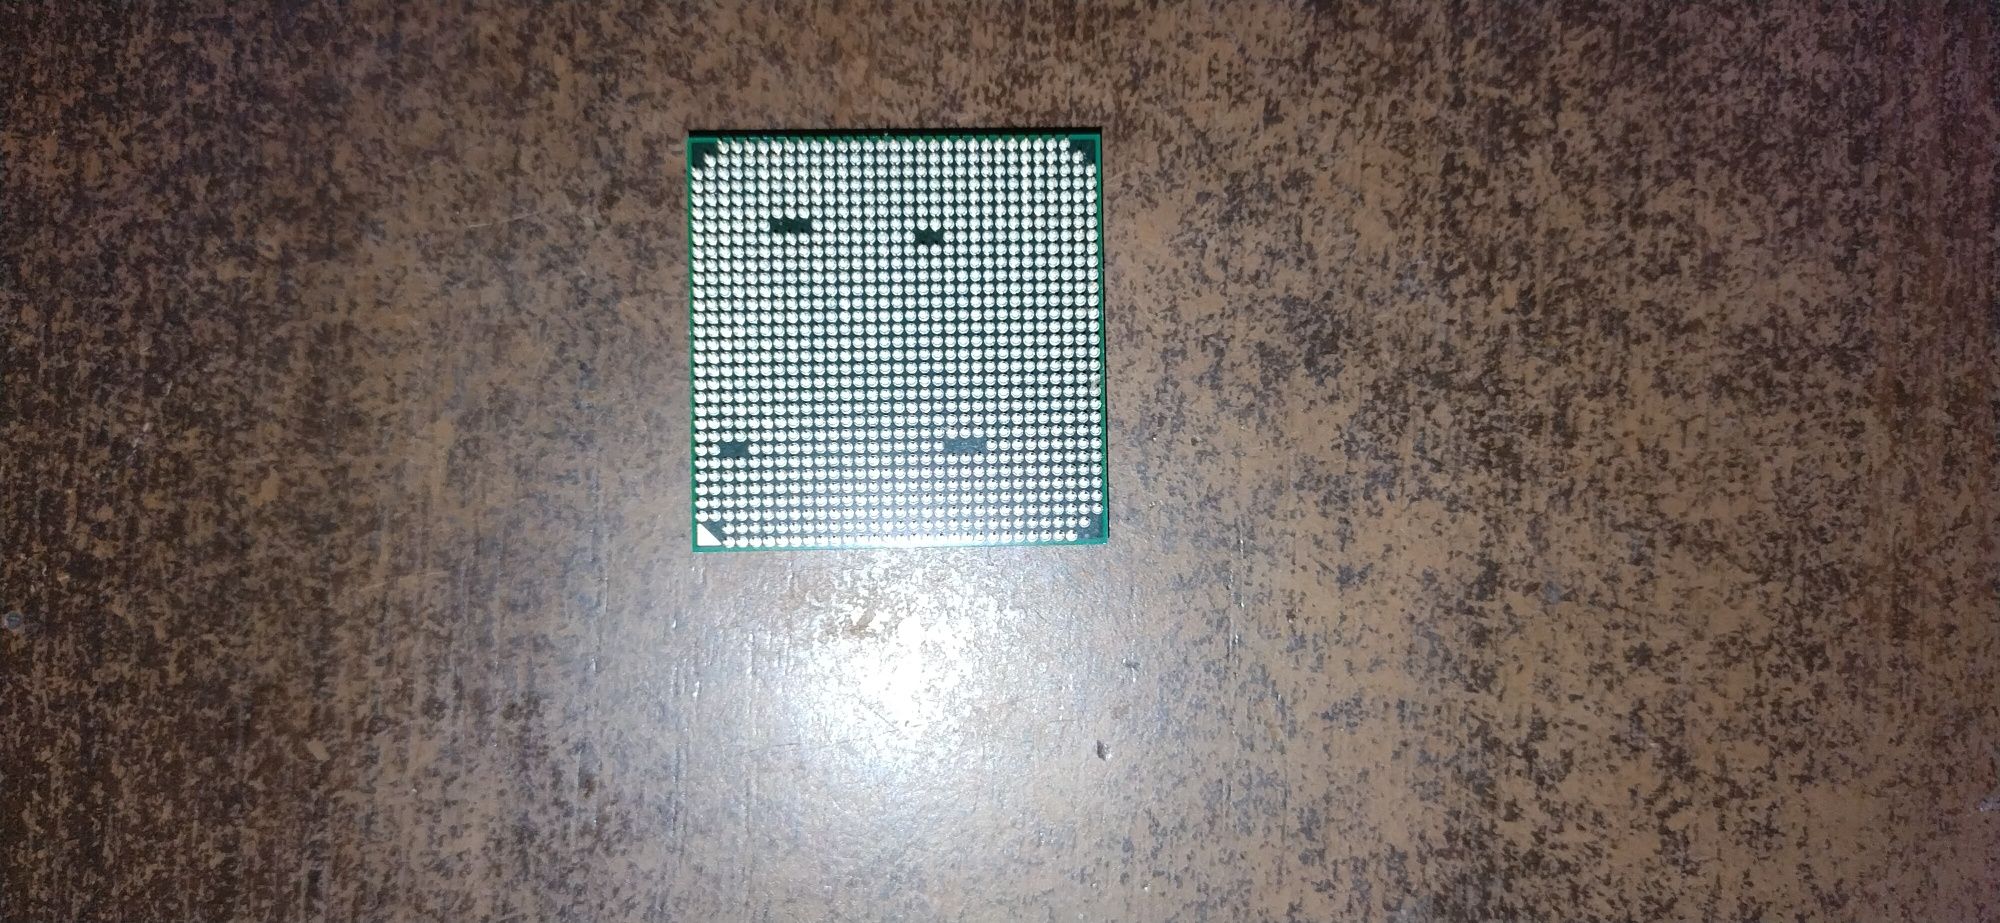 Продам процессор Sempron 145 2.8Ghz